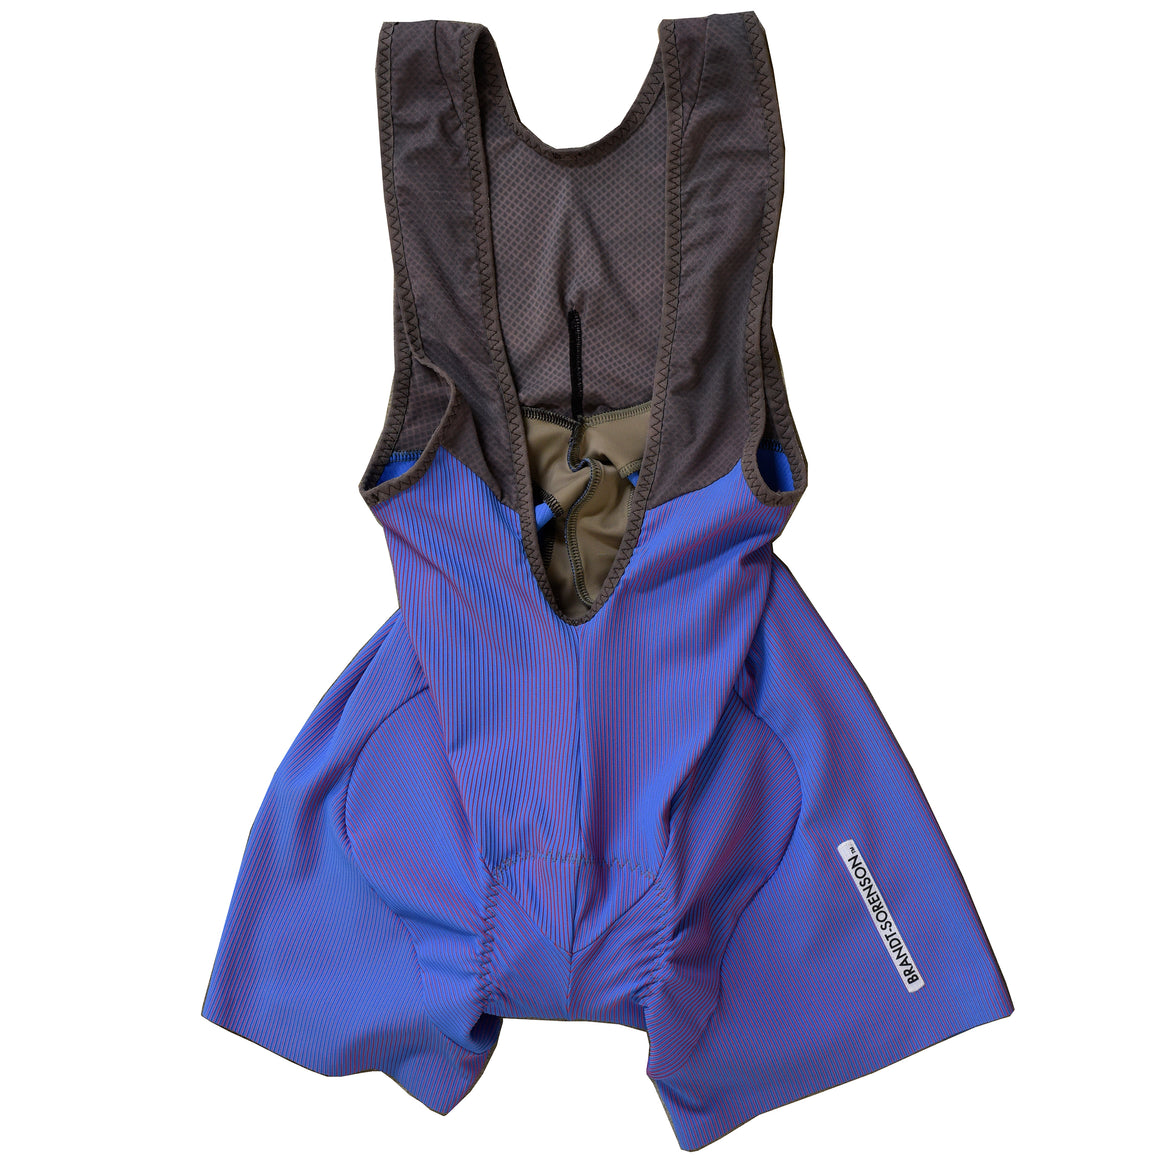 Rib Knit Bib Cycling Shorts: Two-Tone Purple/Blue